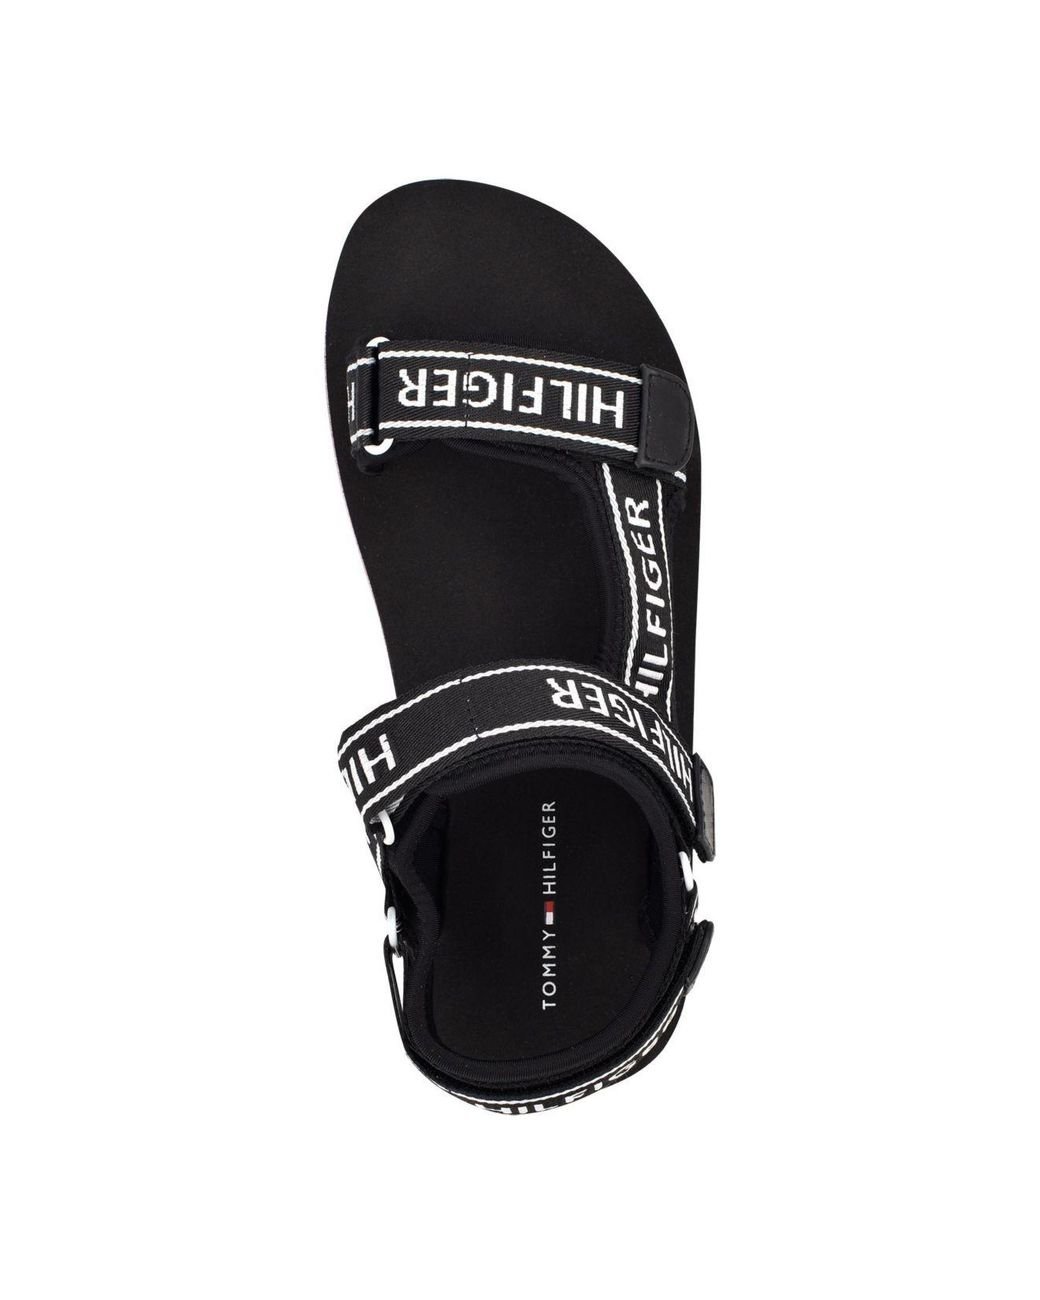 New Tommy Hilfiger ladies 6 platform sandals hook & loop Nurii black white  blue